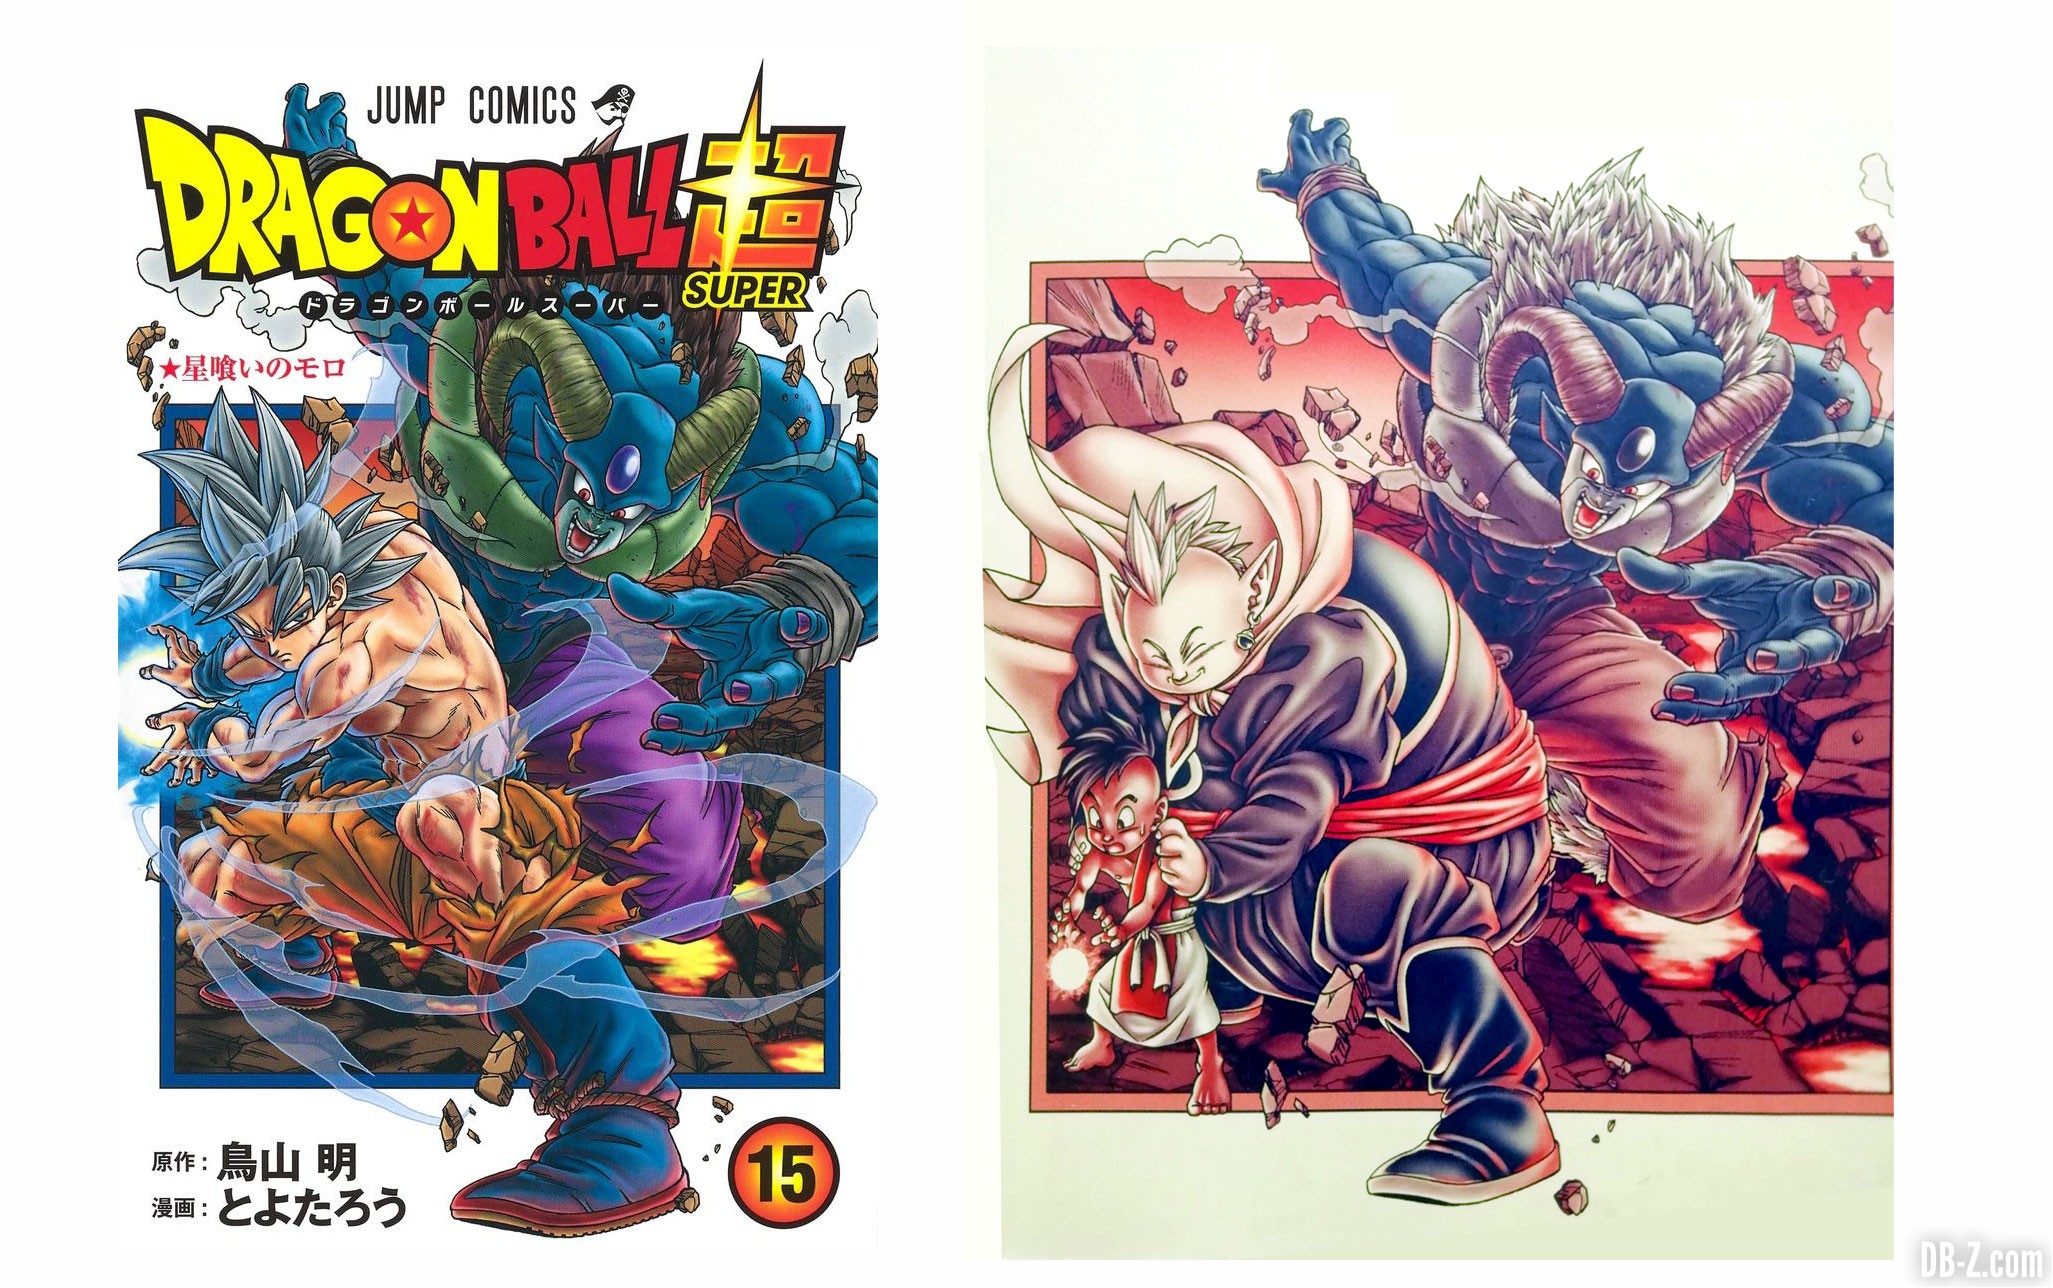 Dragon Ball Super Tome 15 (VF) : N°1 des ventes et une date de sortie  avancée